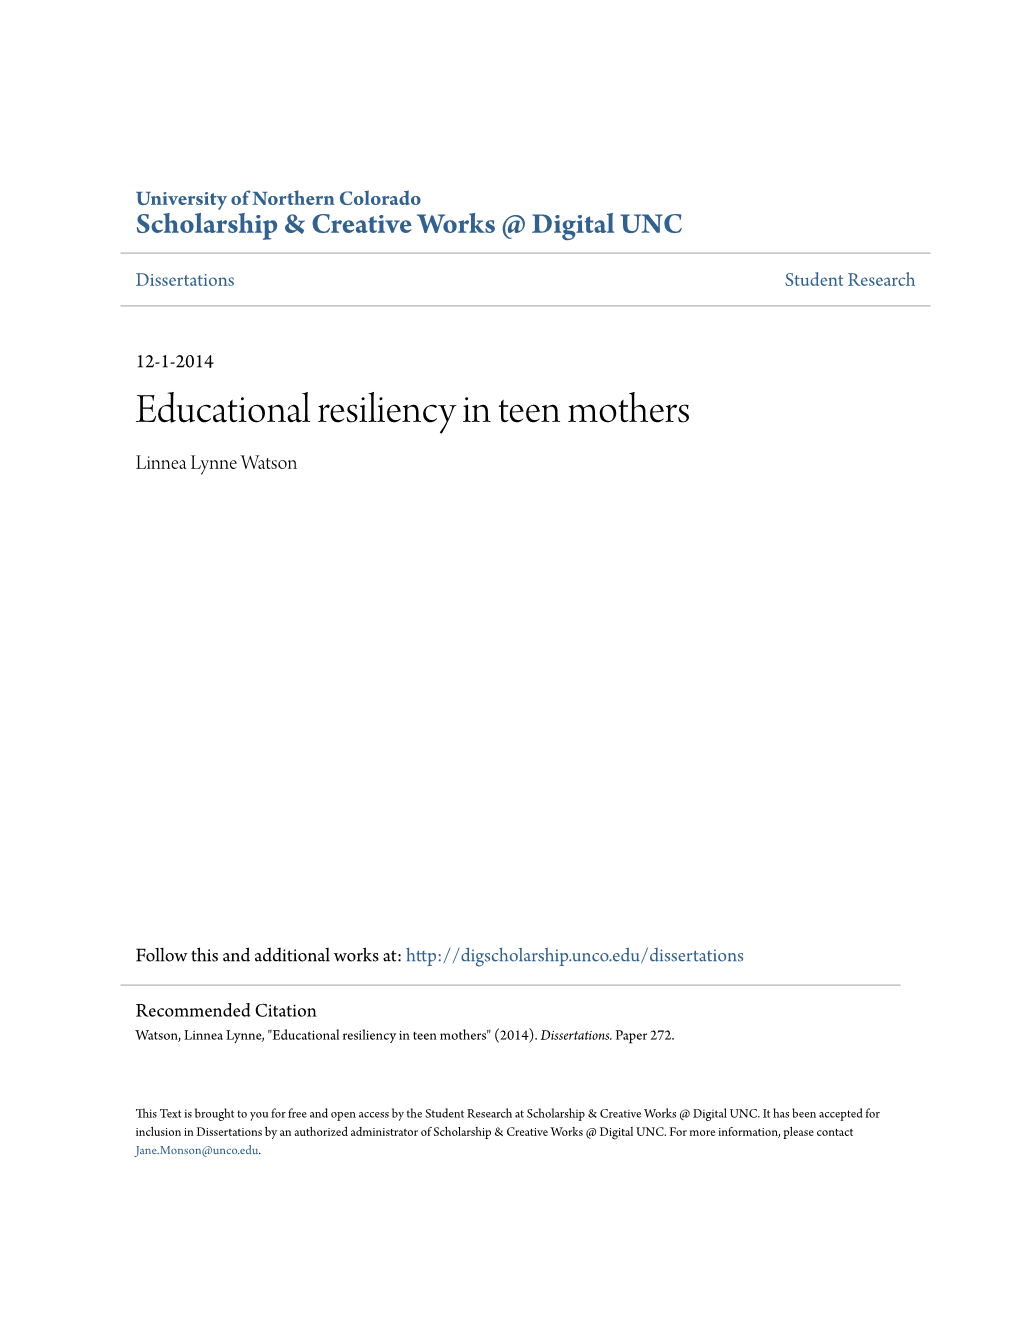 Educational Resiliency in Teen Mothers Linnea Lynne Watson